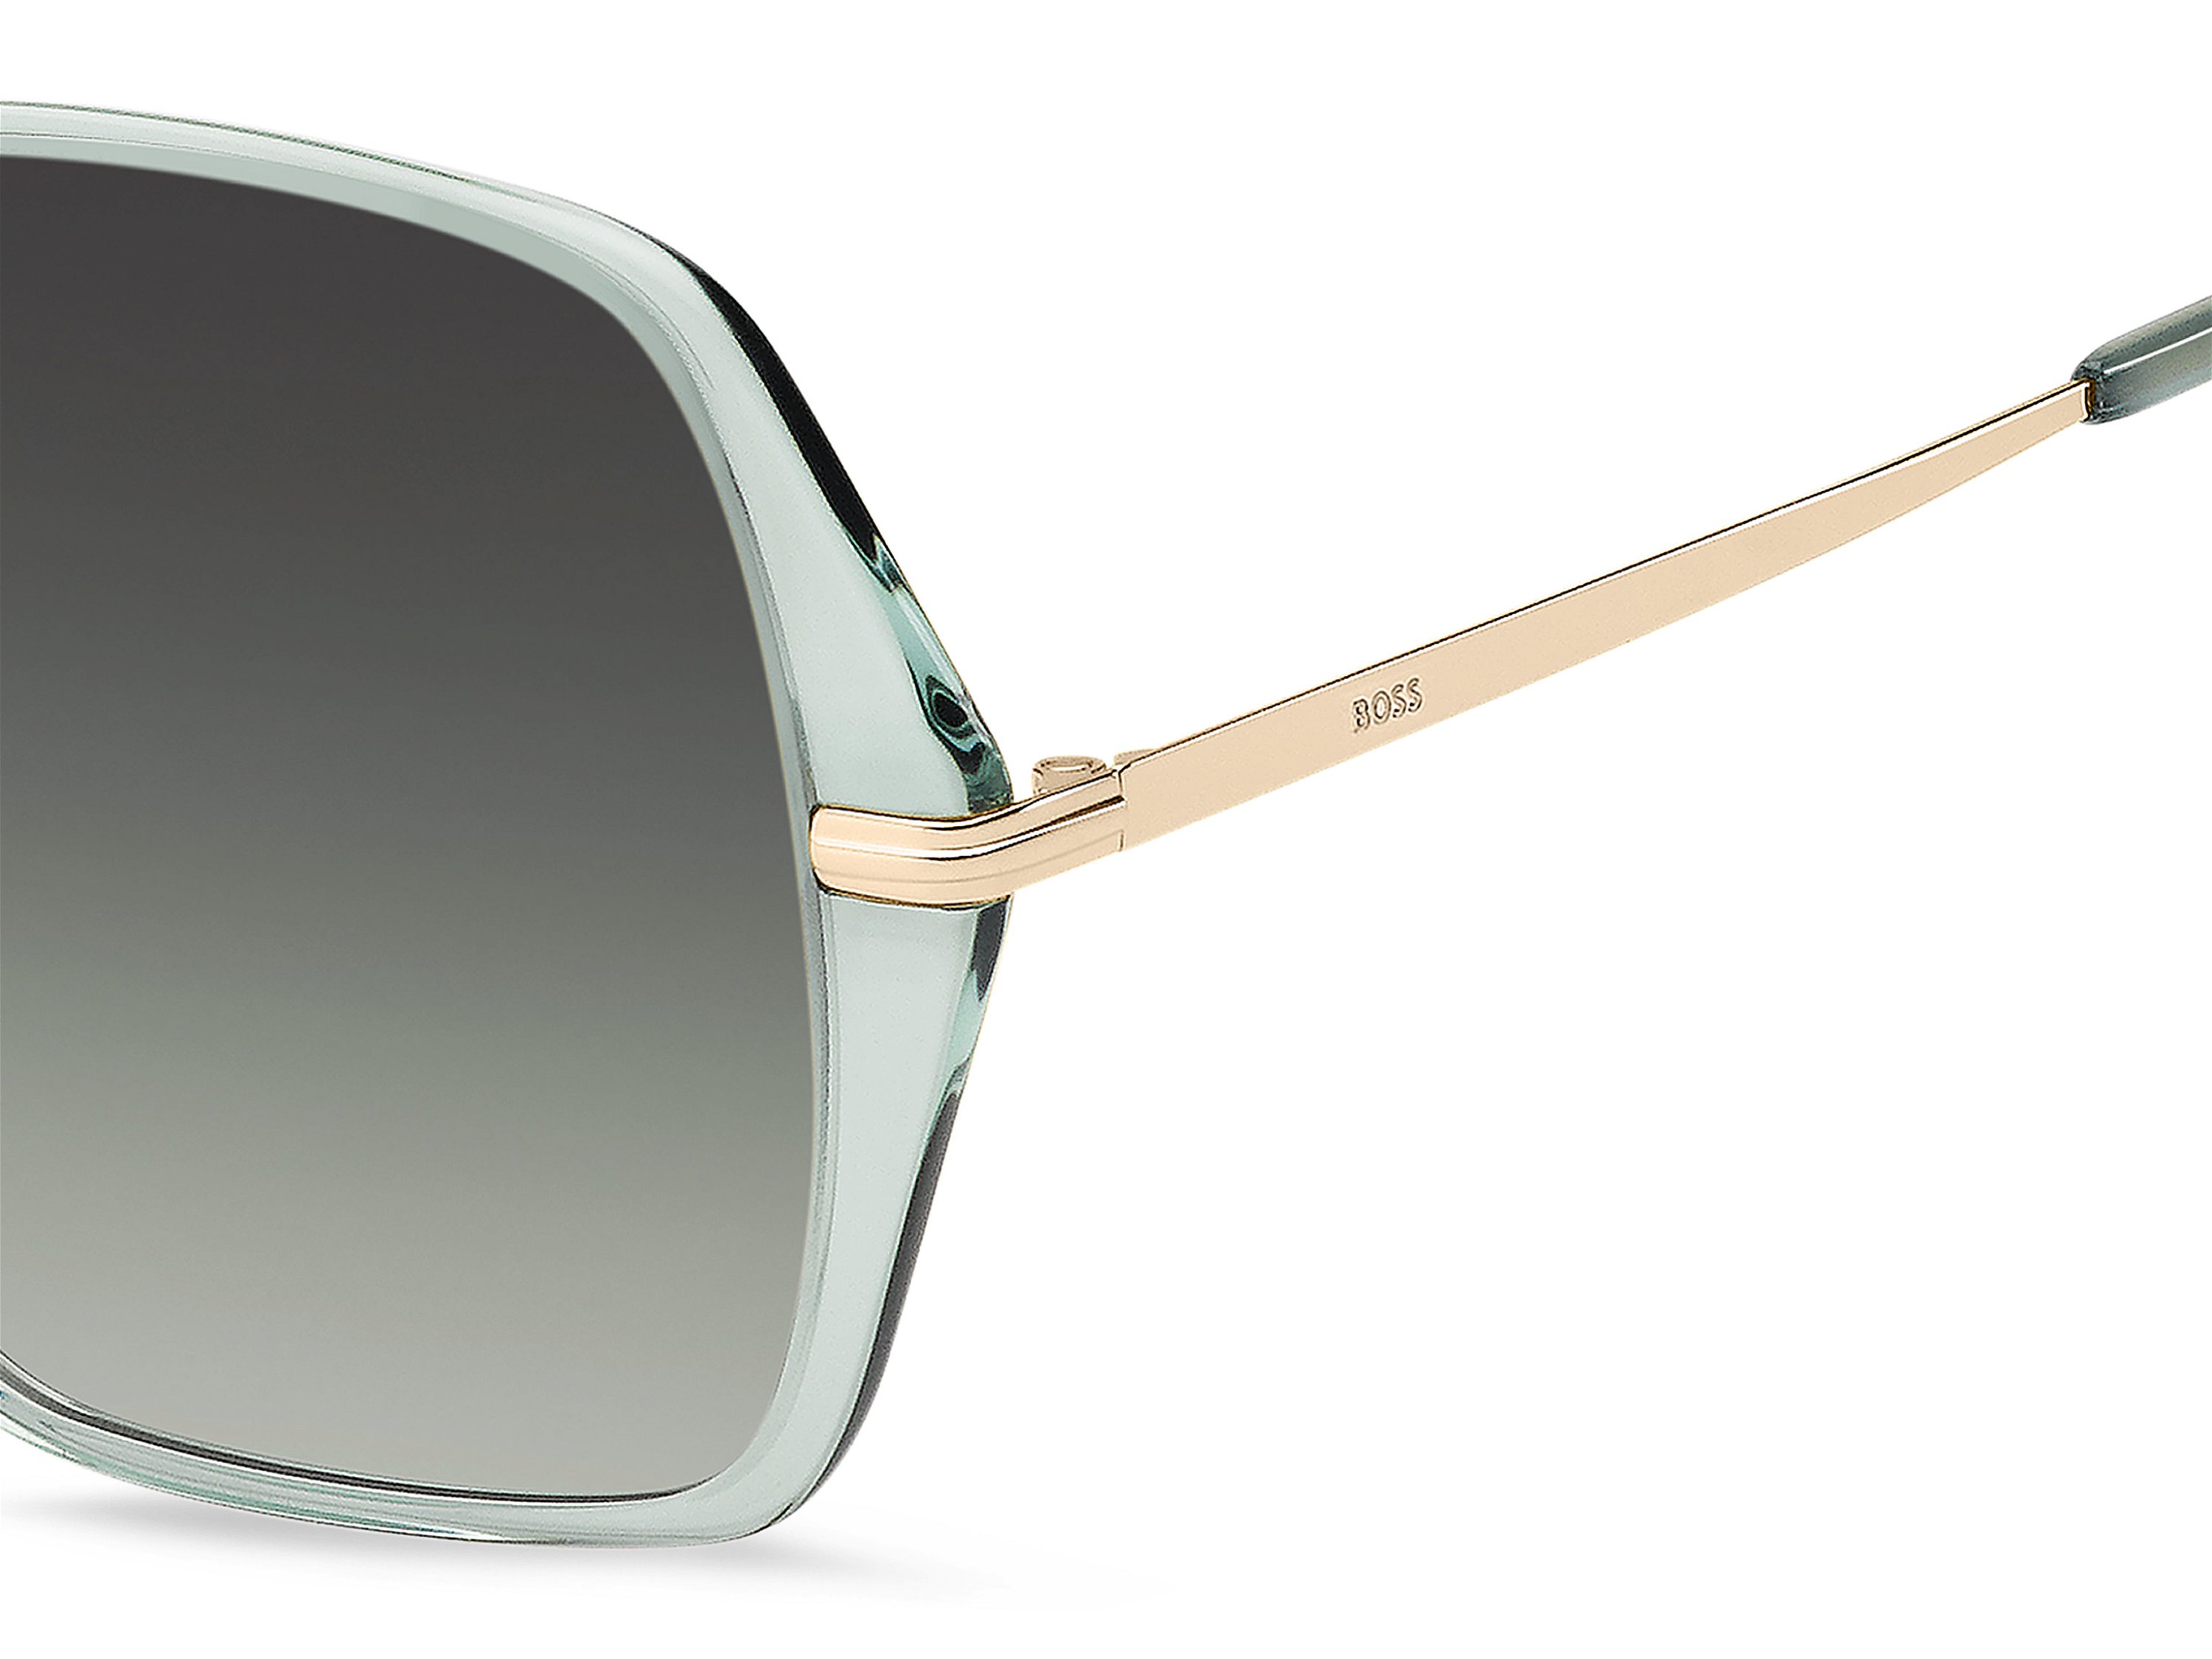 Das Bild zeigt die Sonnenbrille BOSS1660S PEF von der Marke BOSS in Grün/Gold.